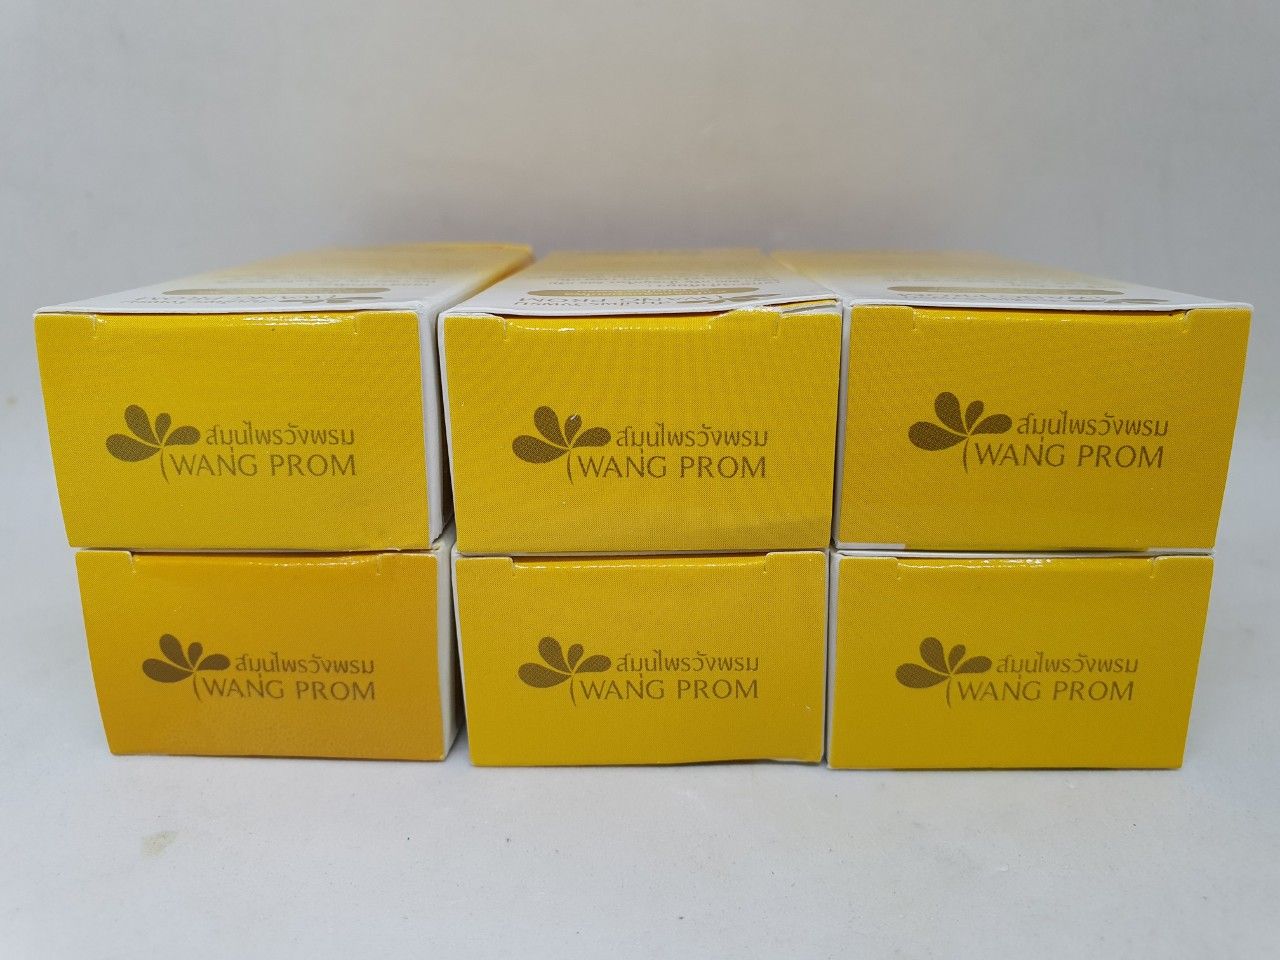  Dầu gió compound phlal yellow oil wangprom herb brand chính hãng thái lan 20 ml 